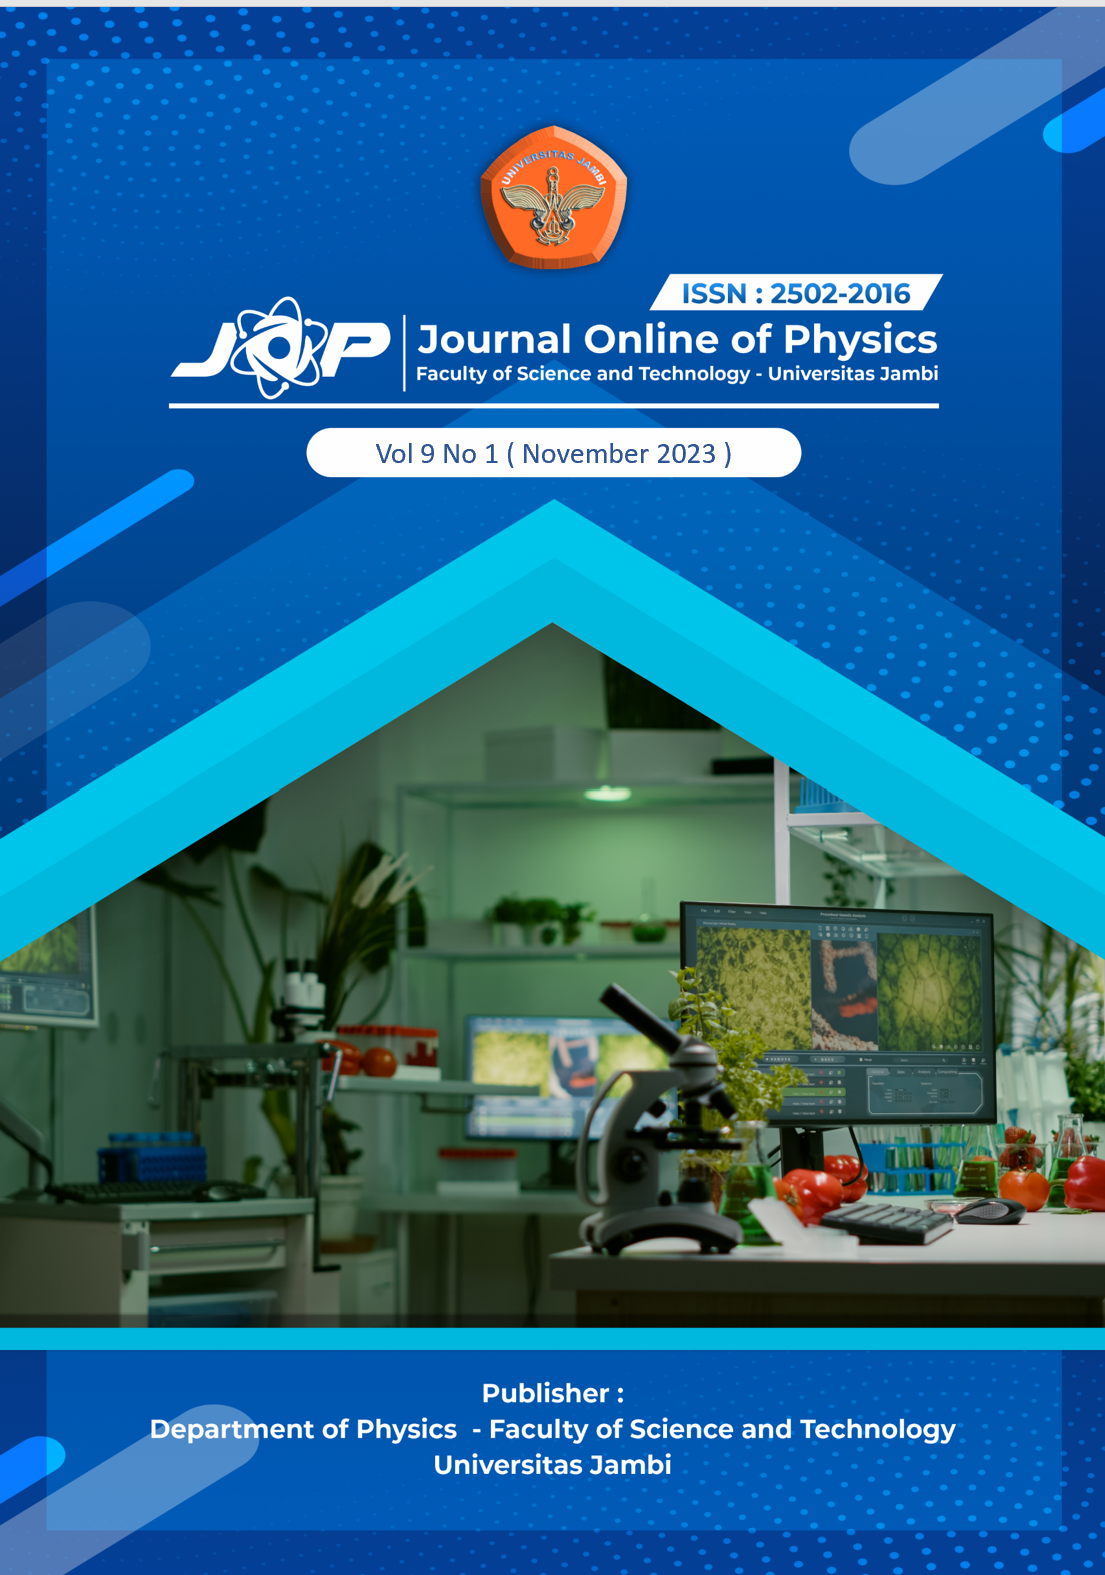 					View Vol. 9 No. 1 (2023): JOP (Journal Online of Physics) Vol 9 No 1
				